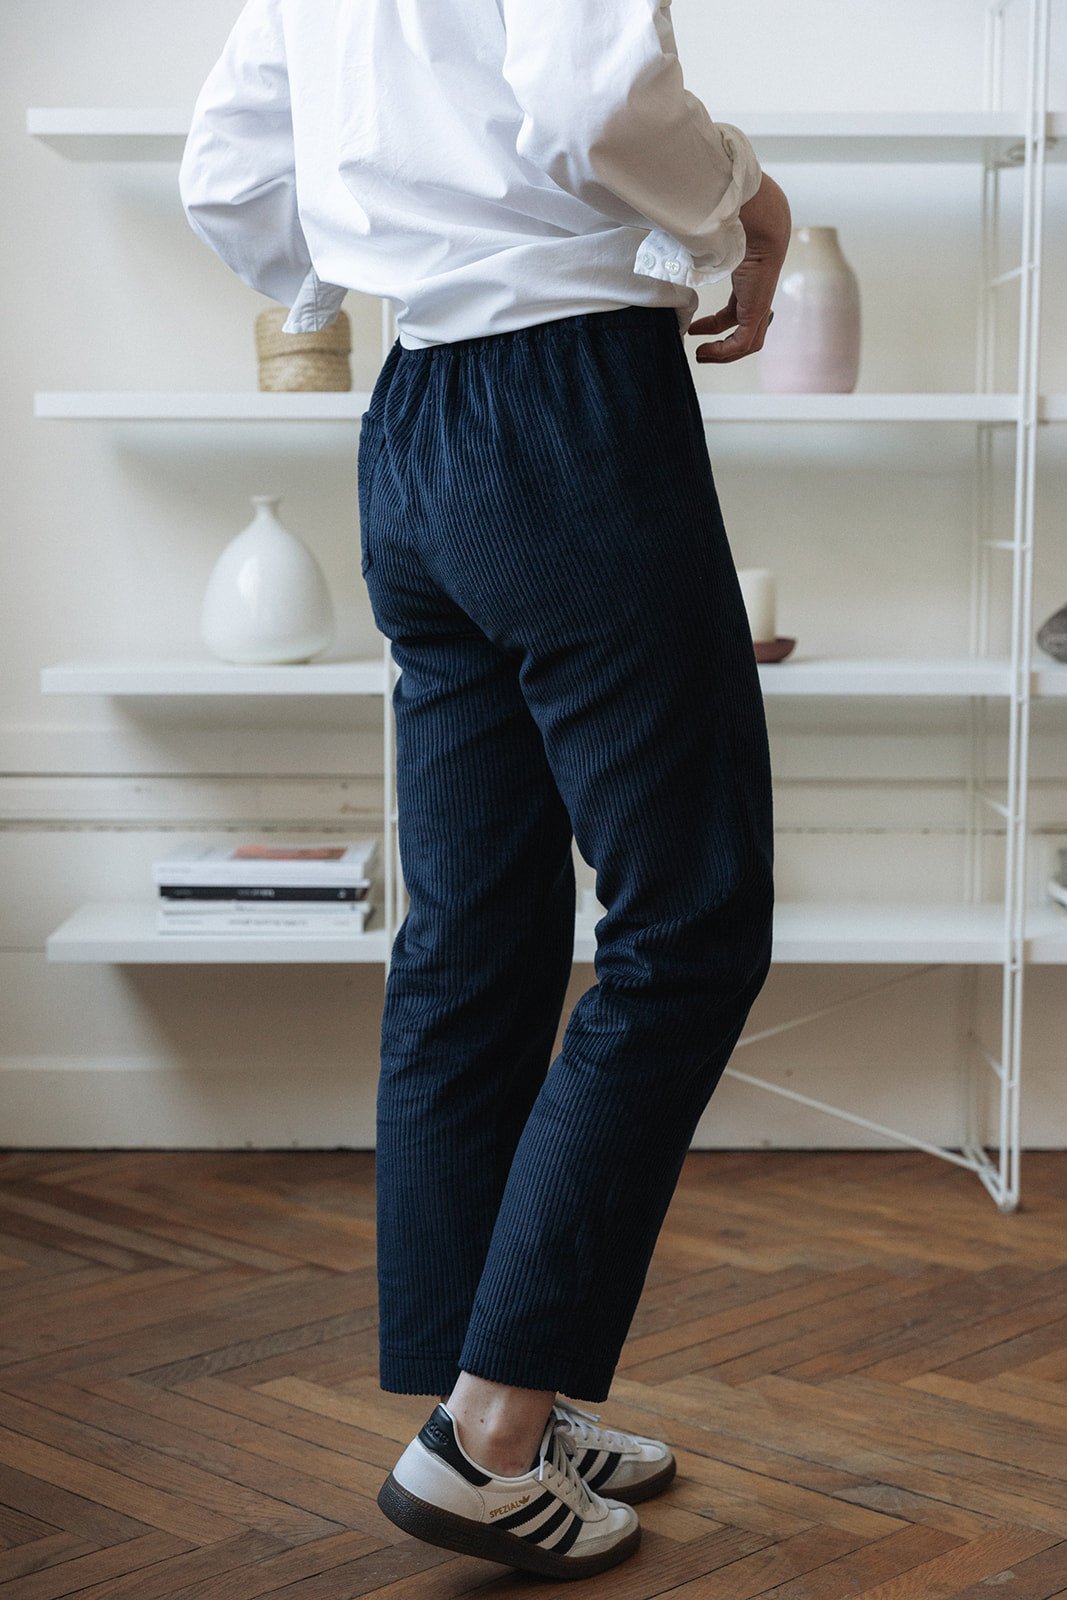 Joli Kit Couture - Pantalon Harlow velours marine - Joli Lab